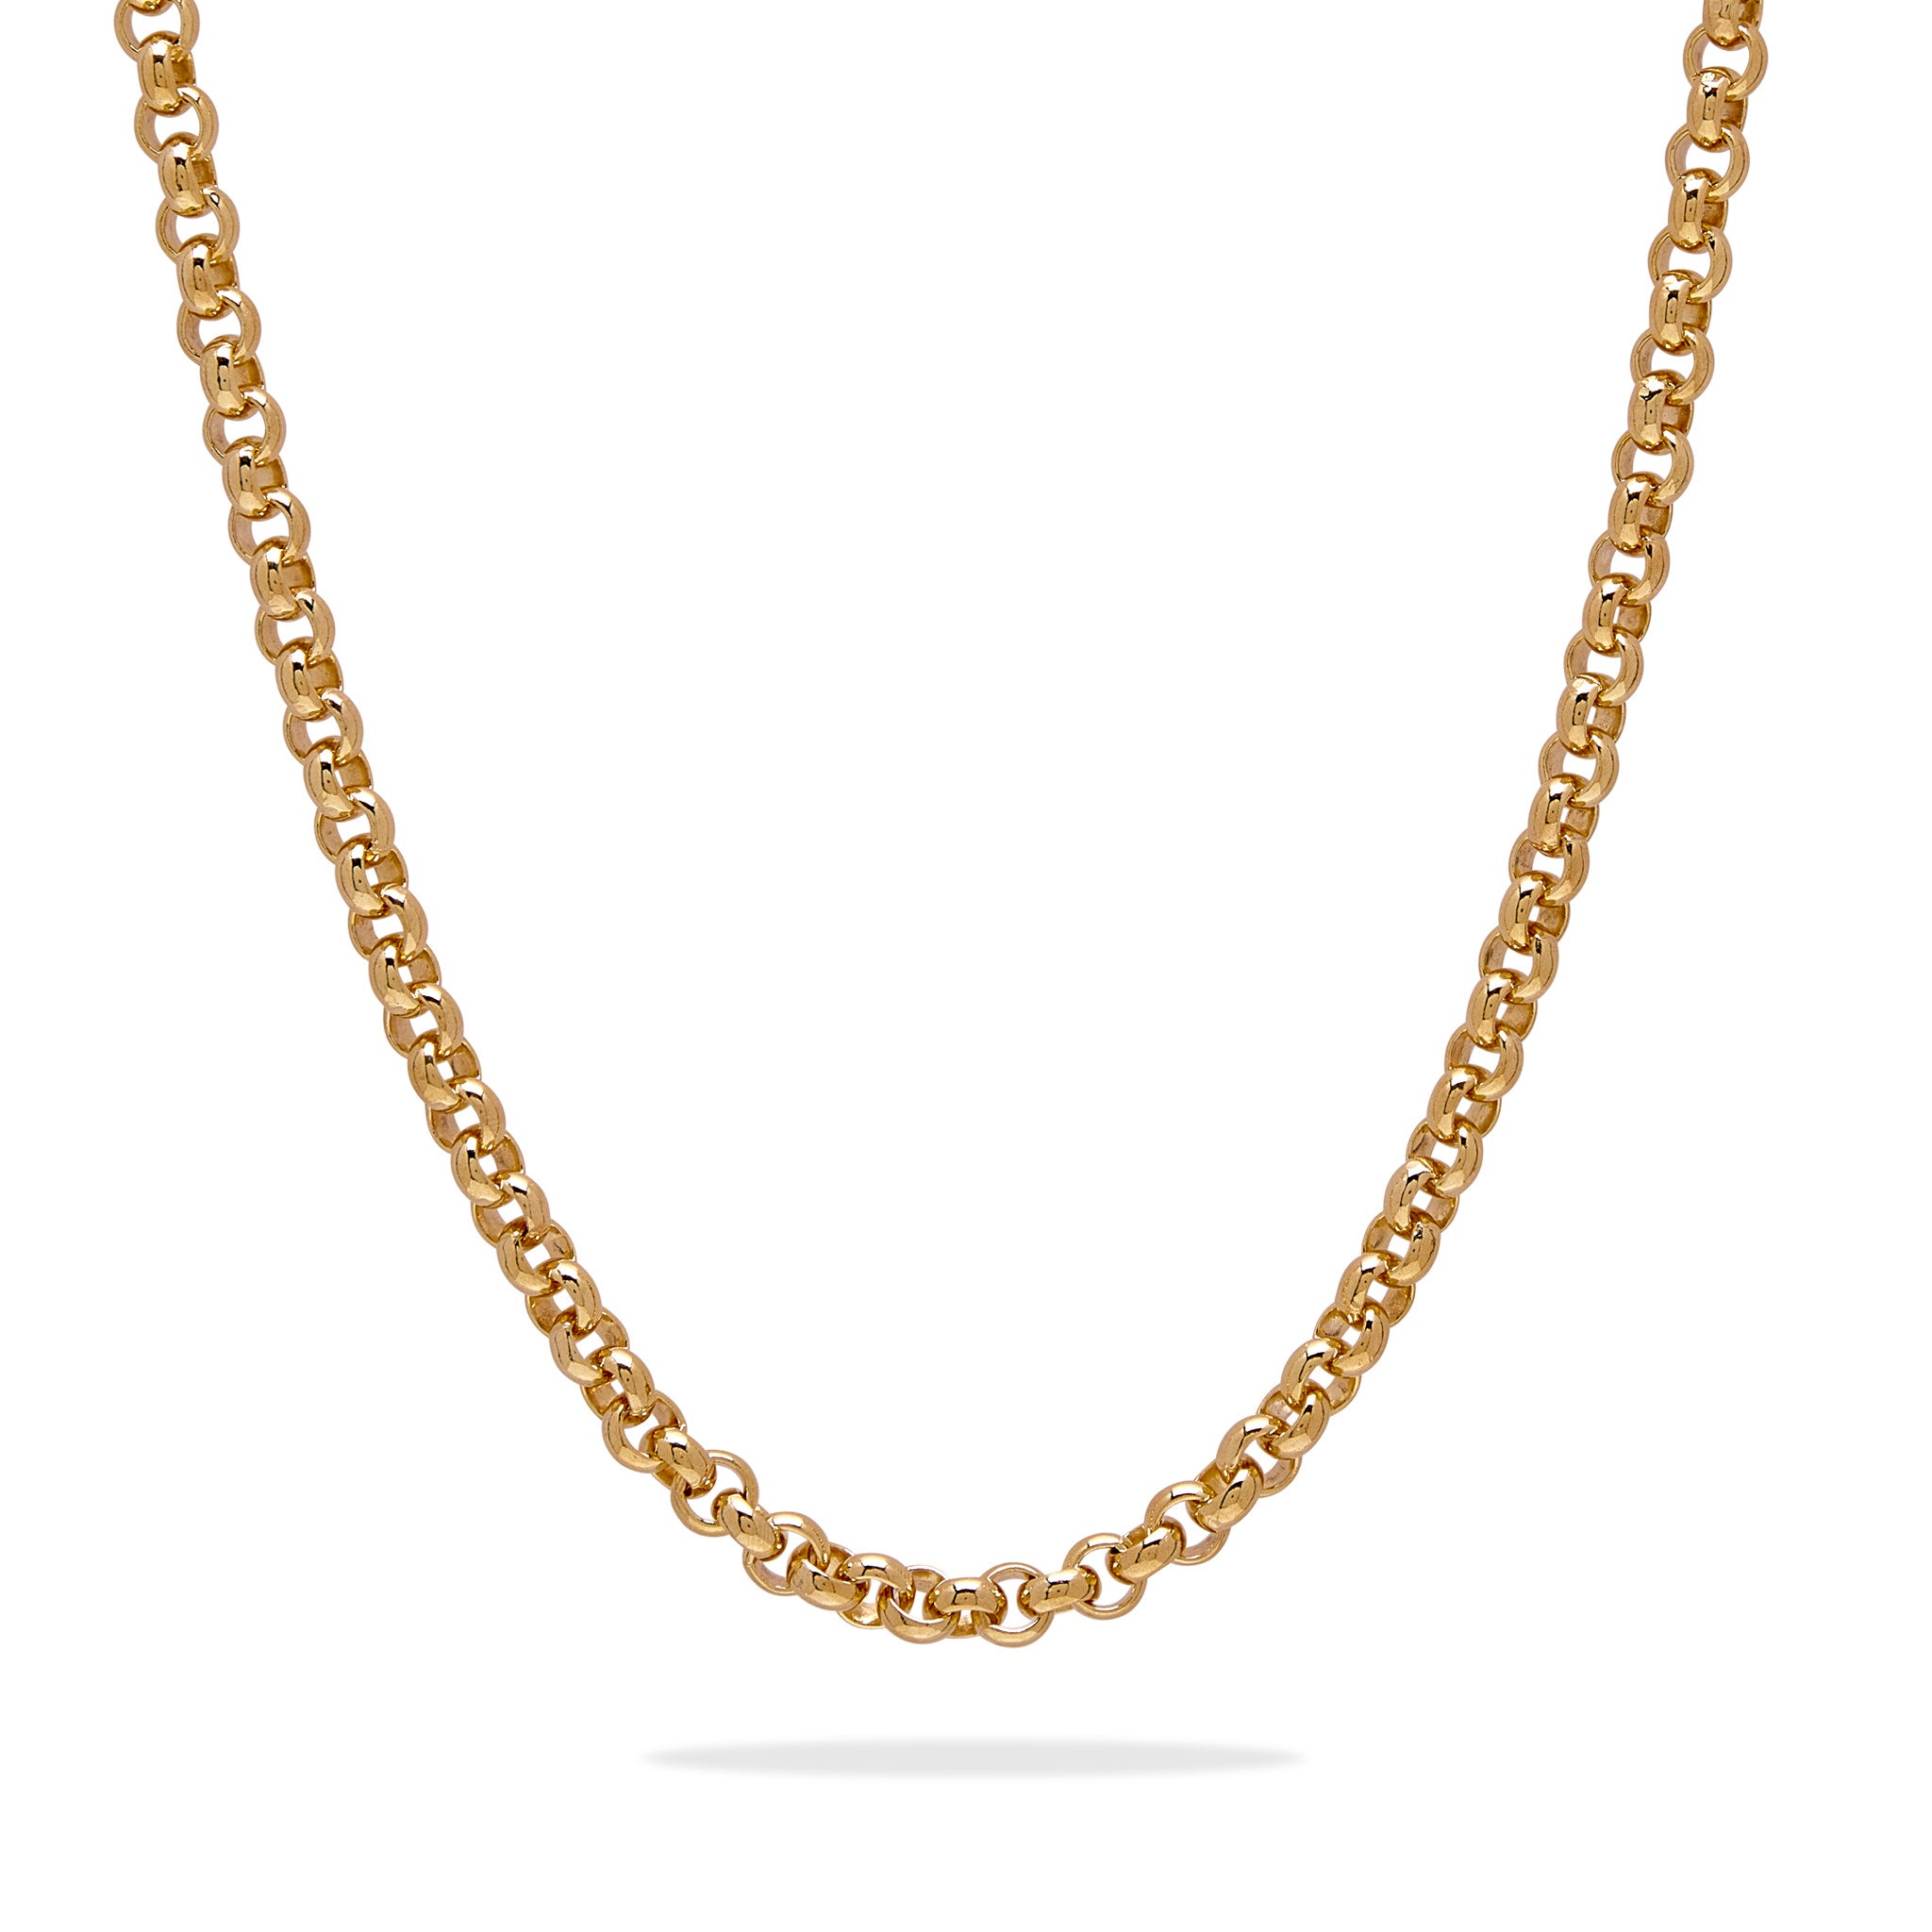 Belcher Chain - Gold